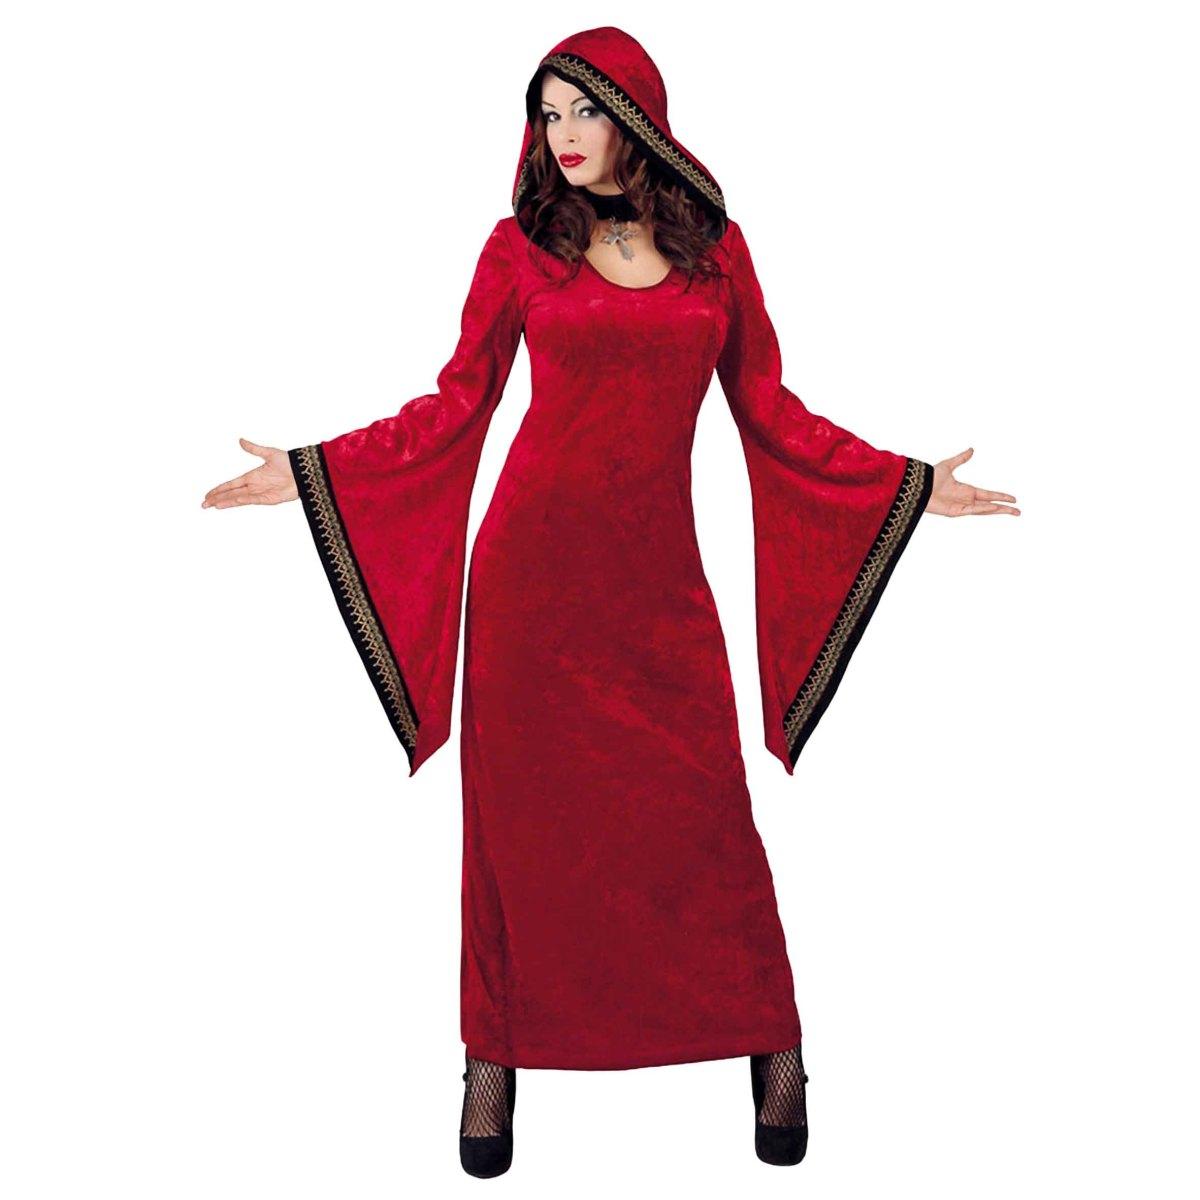 Costume Sacerdotessa Gotica Donna - Ideale per Carnevale - Disponibile su